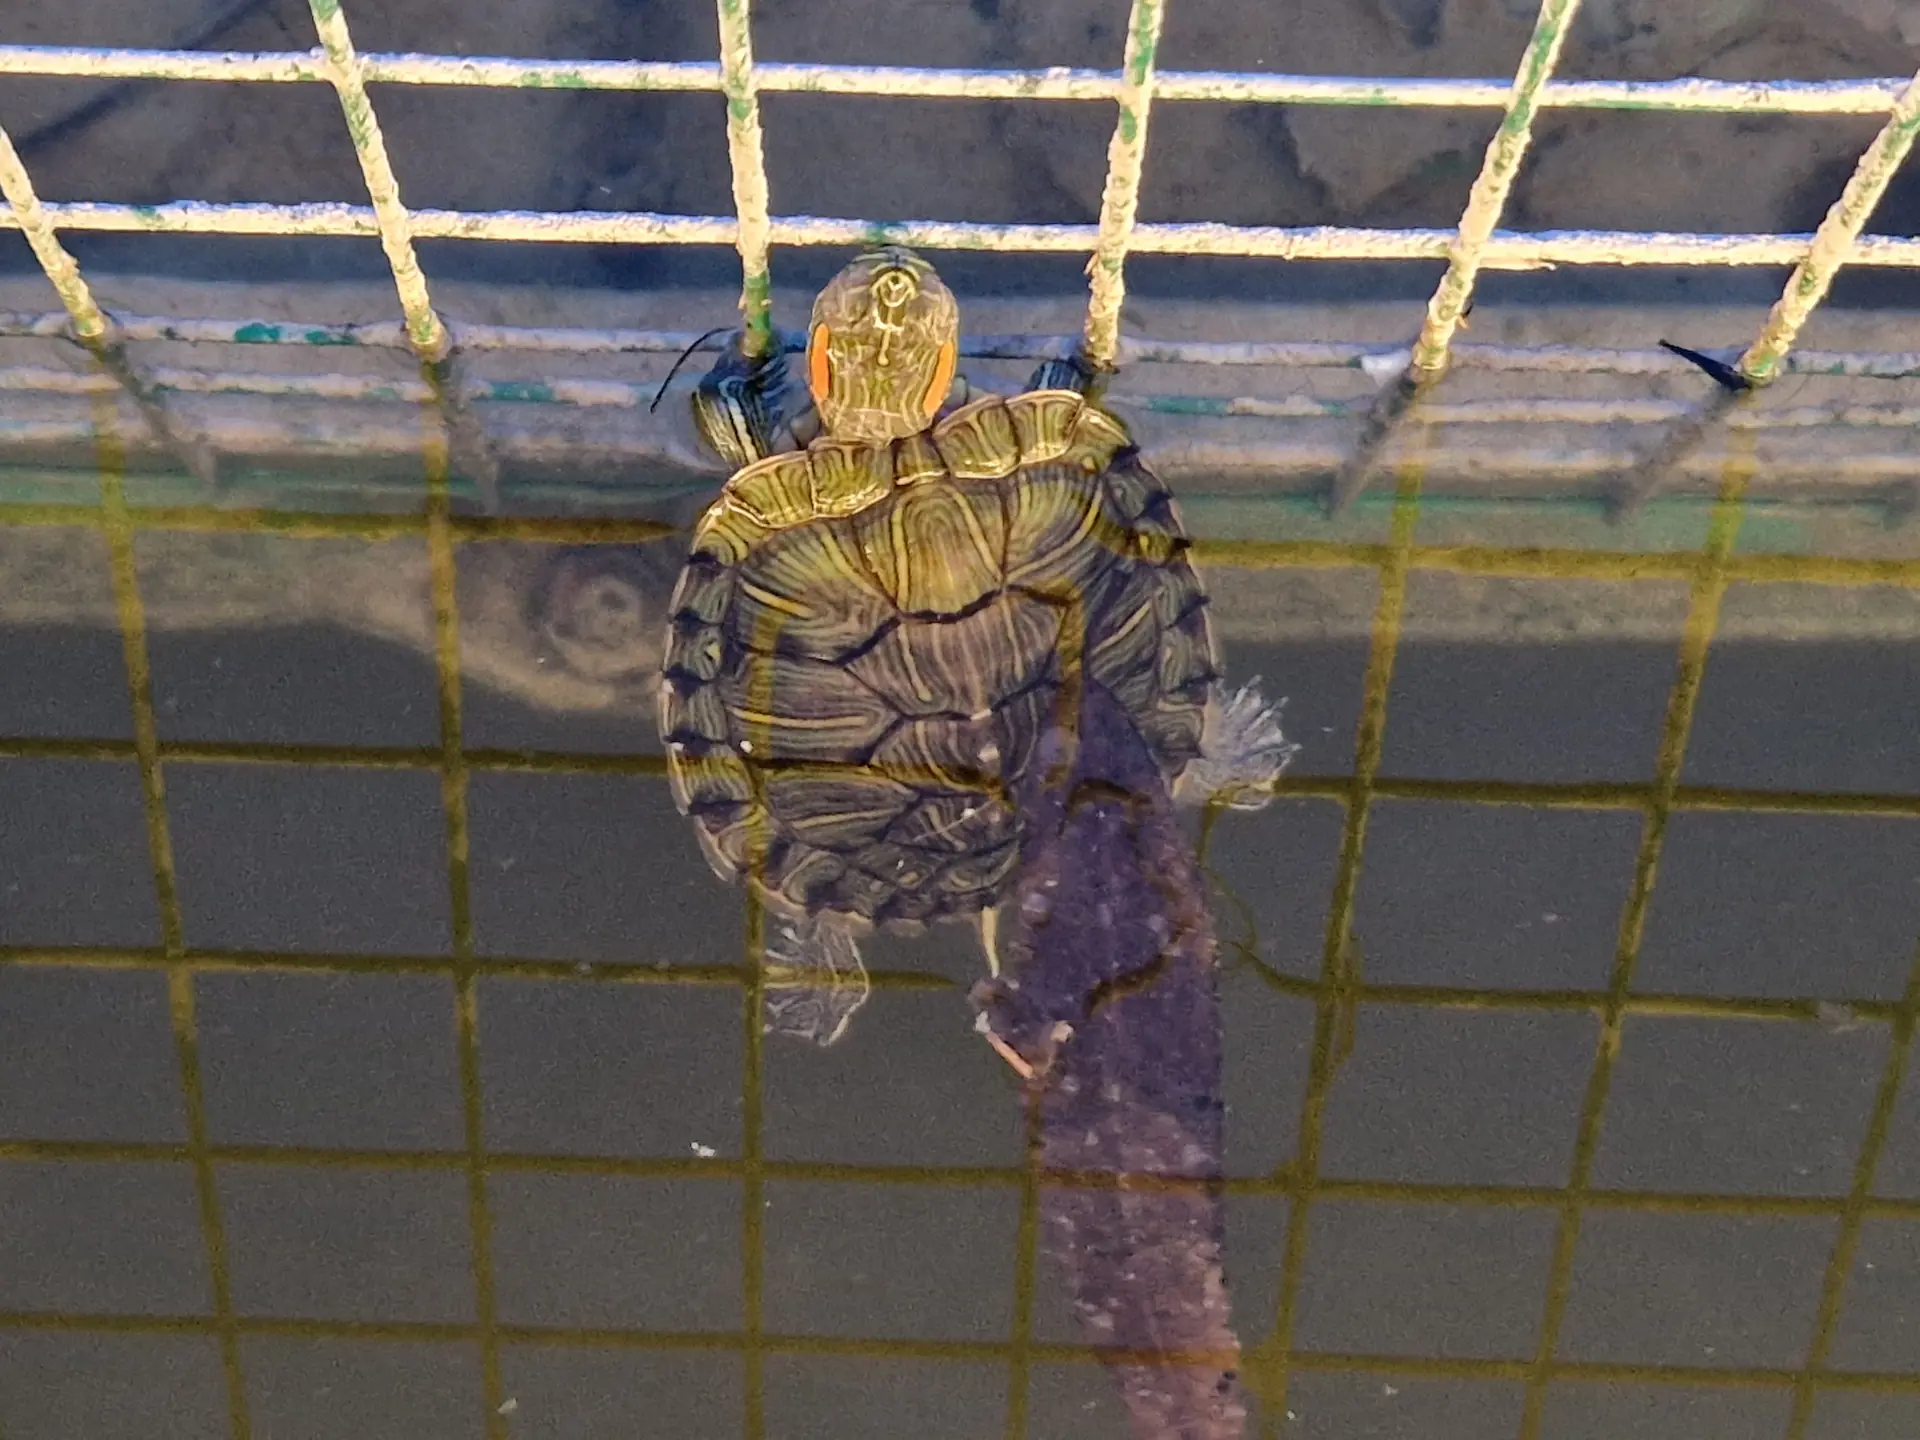 Une minuscule tortue qui nage dans les douves